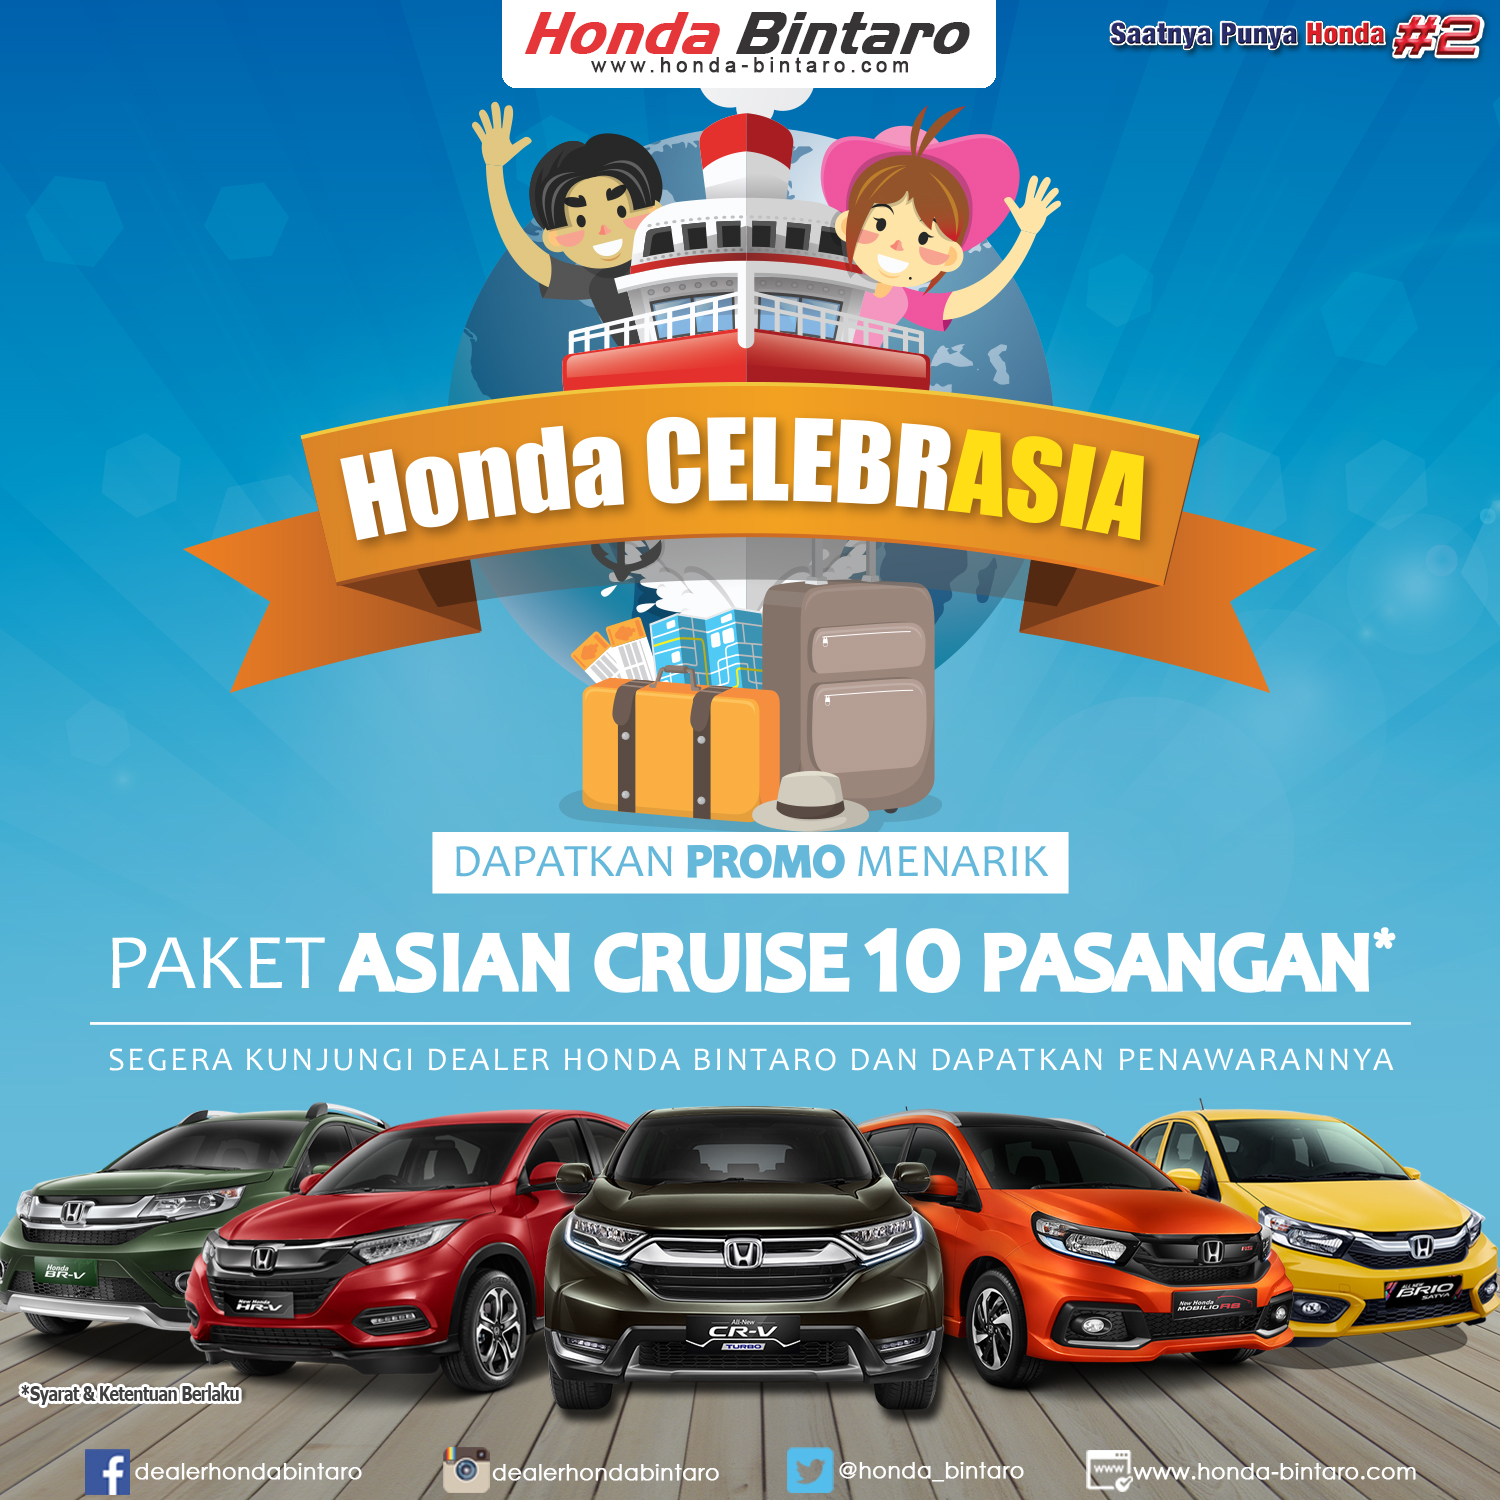 Honda CelebrAsia